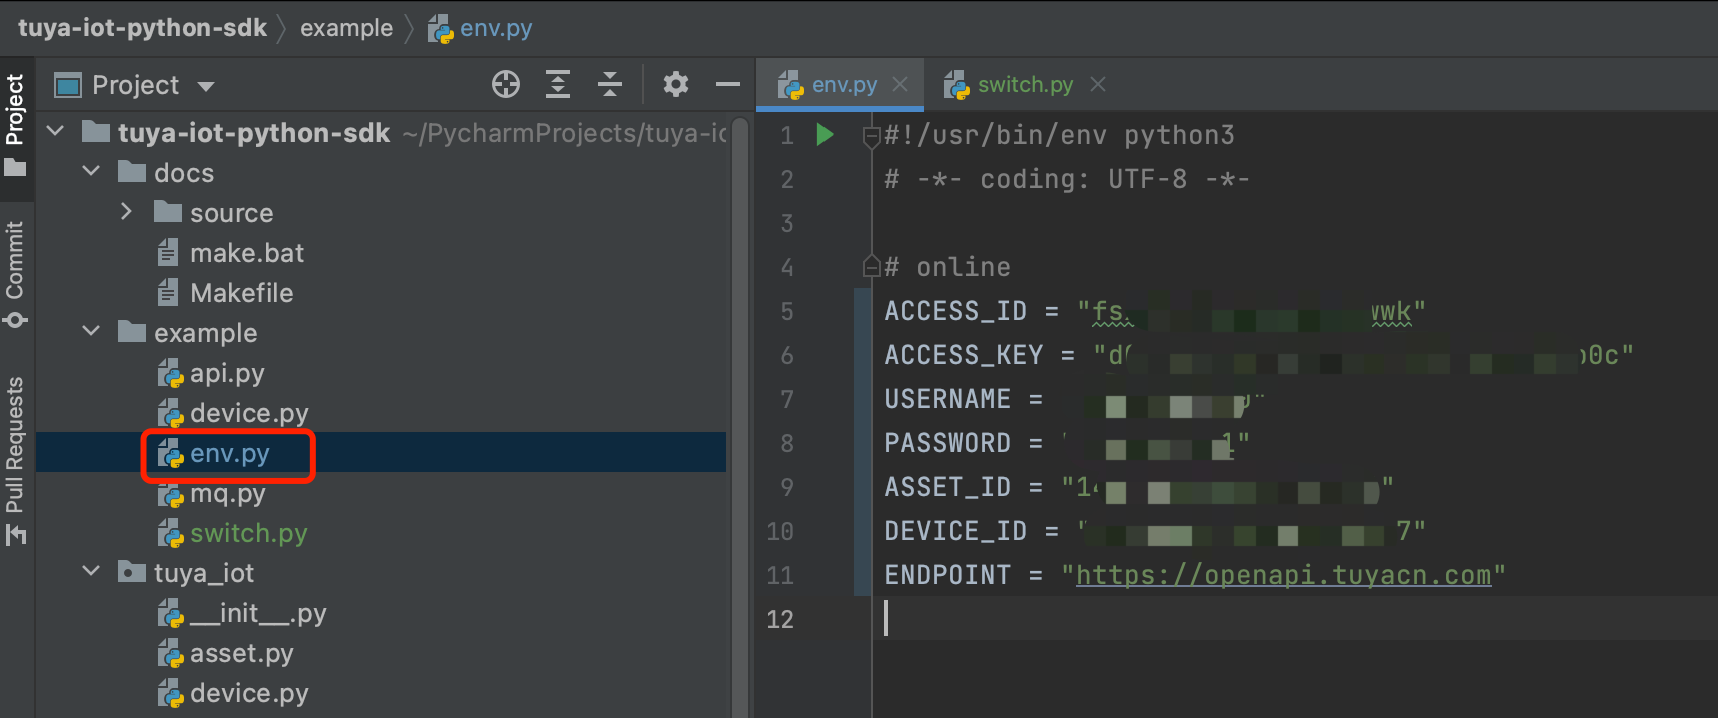 Develop with Python SDK